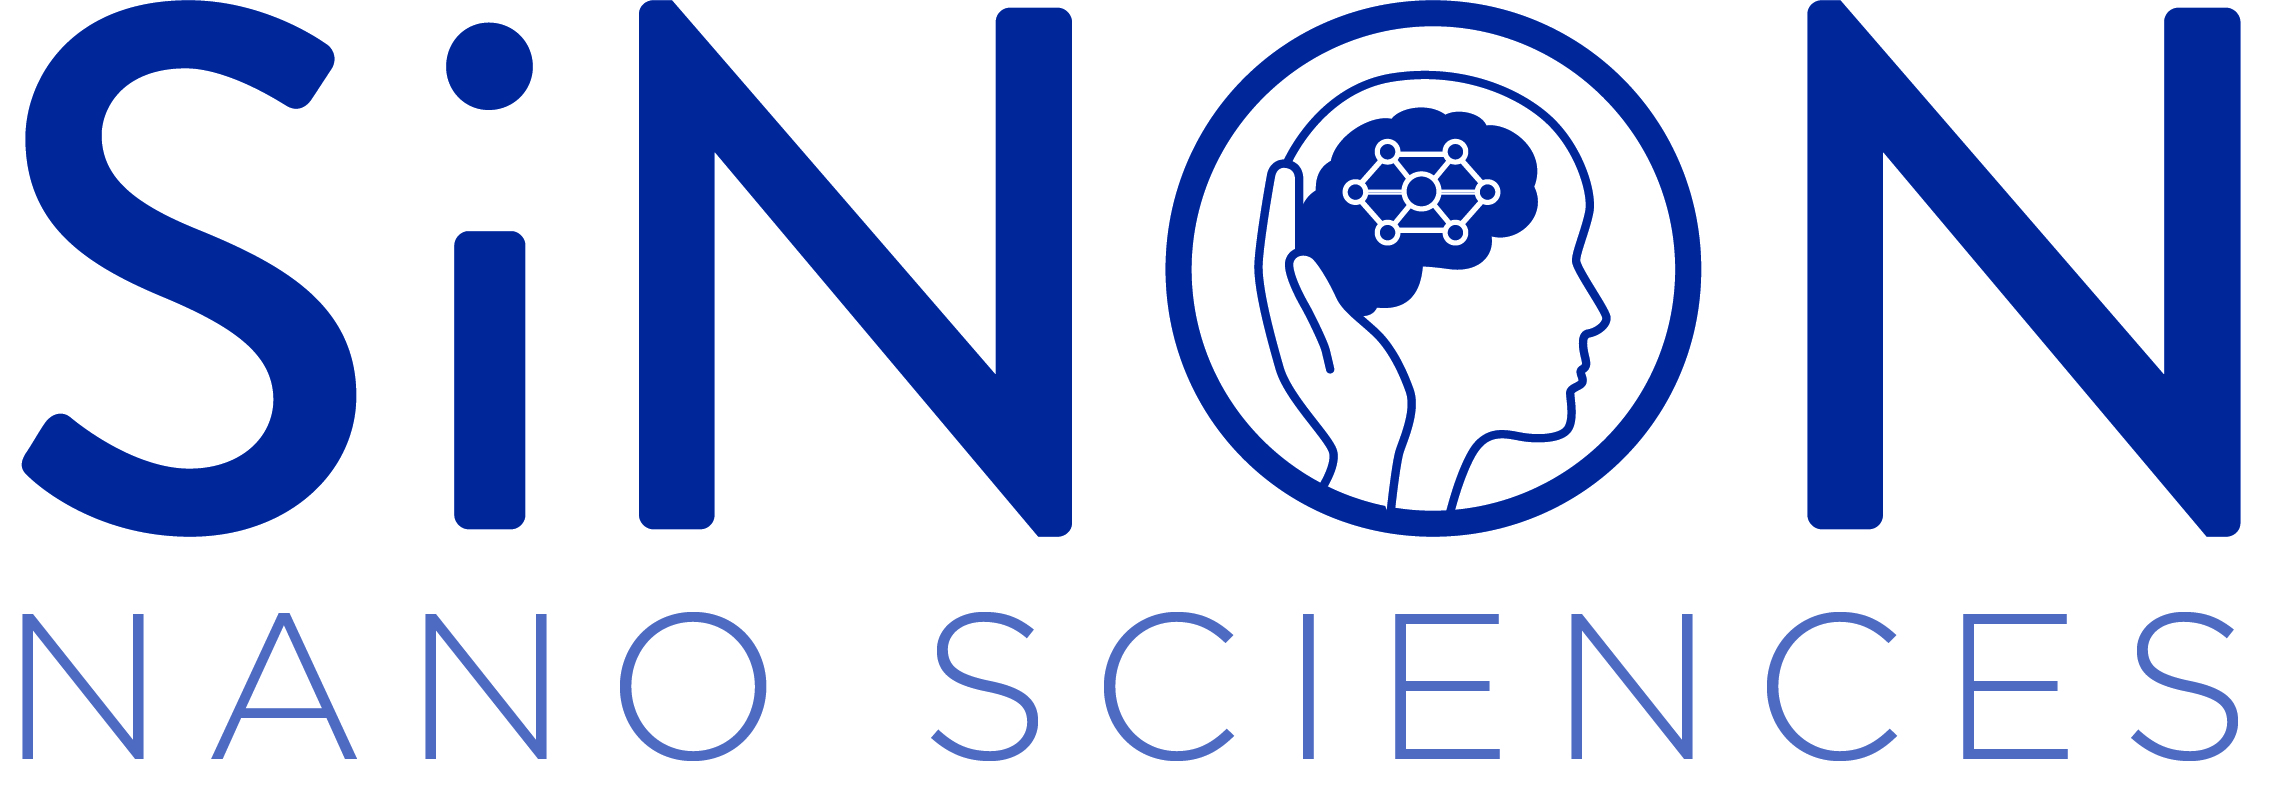 SiNON Nano Sciences